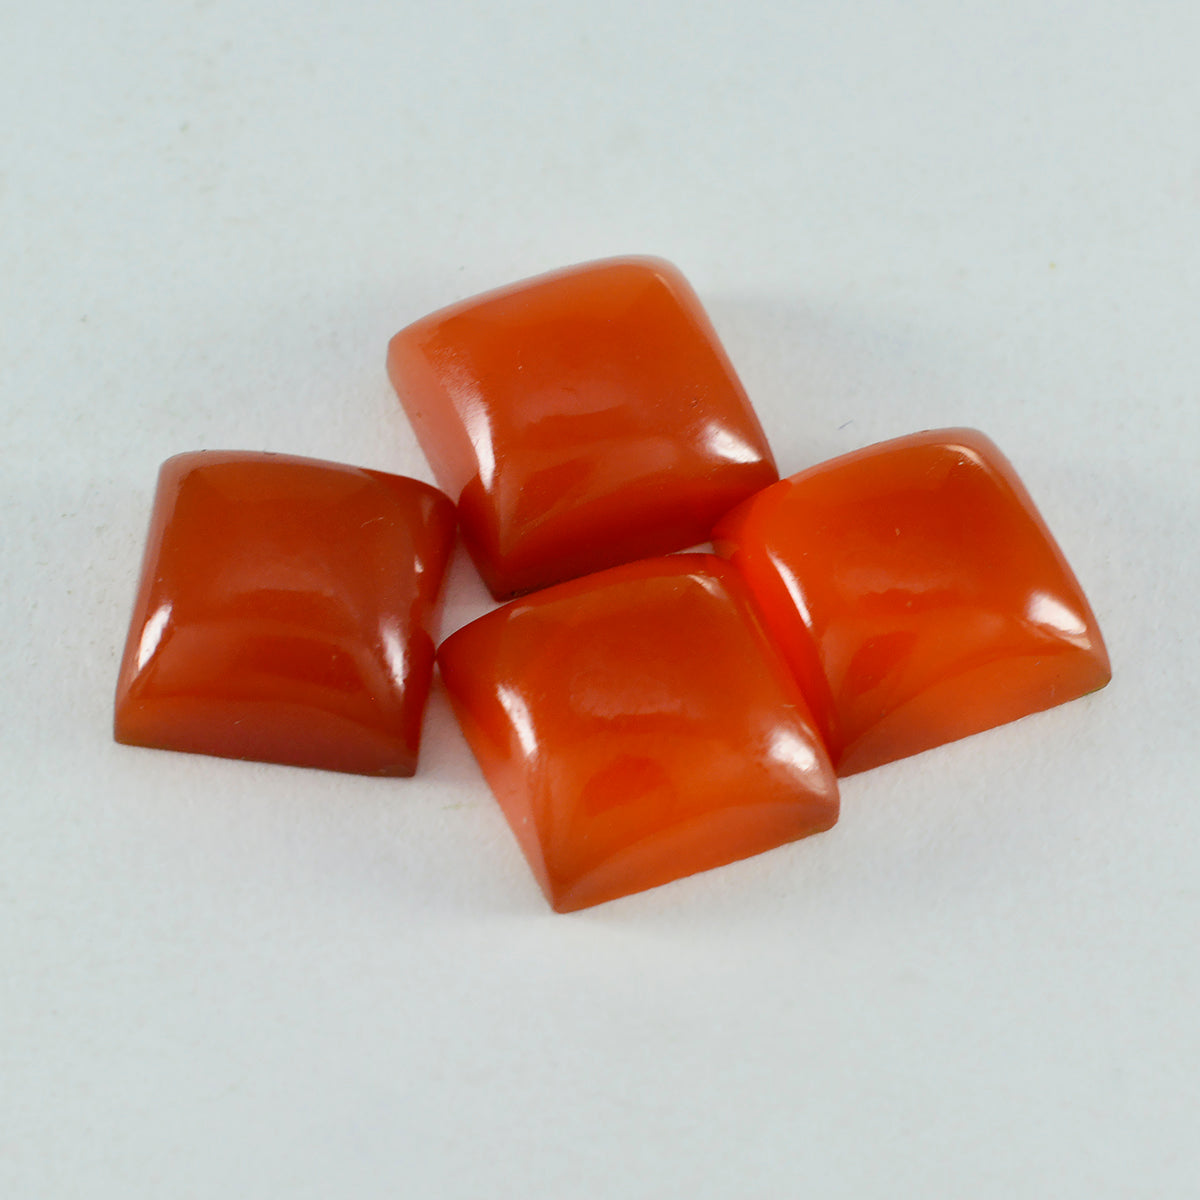 Riyogems 1 Stück roter Onyx-Cabochon, 15 x 15 mm, quadratische Form, gut aussehende, hochwertige lose Edelsteine